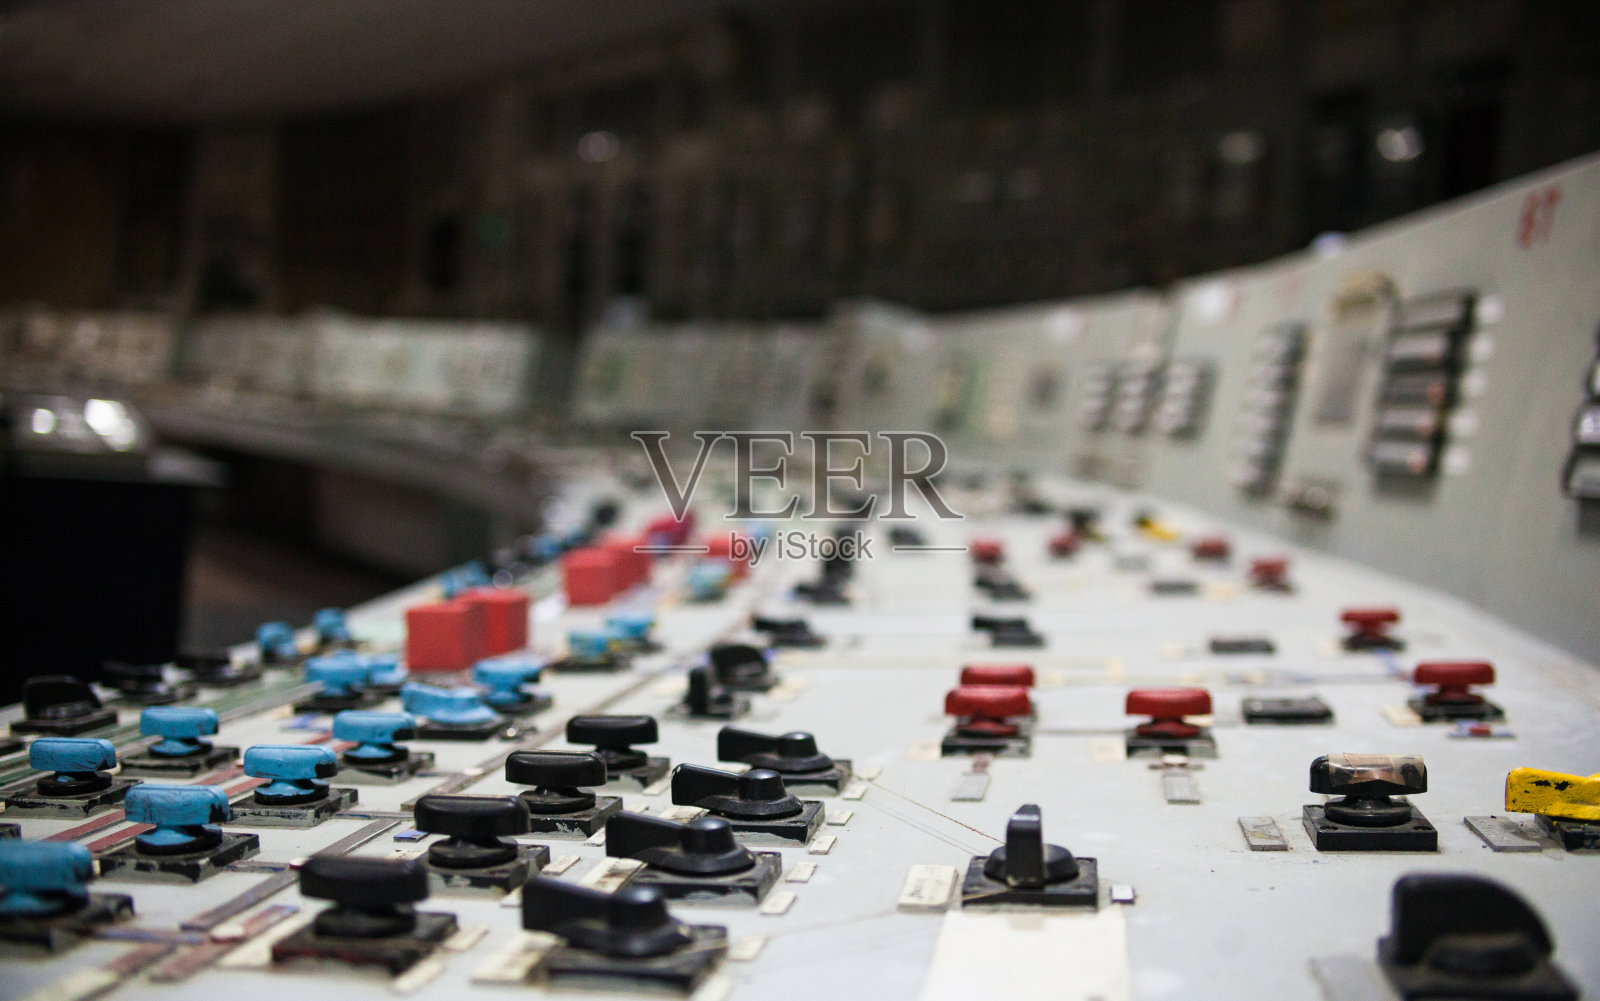 核电站的控制面板照片摄影图片